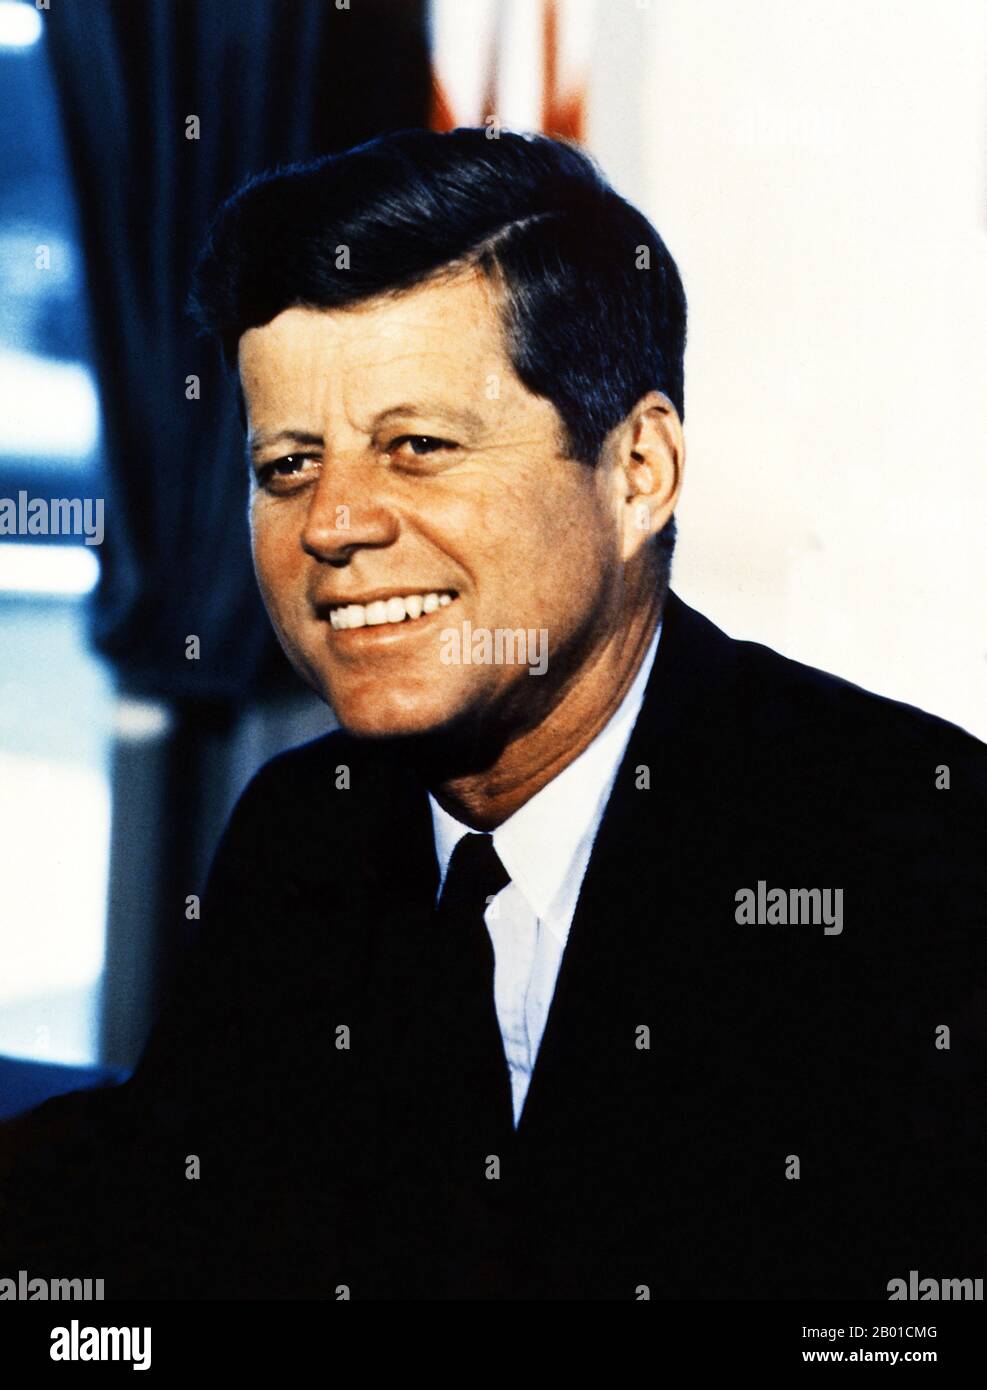 Etats-Unis: John Fitzgerald 'Jack' Kennedy (29 mai 1917 - 22 novembre 1963), souvent mentionné par ses initiales JFK, 35th Président des Etats-Unis (1961-1963). Portrait de Cecil Stoughton (1920-2008, domaine public), Bureau ovale, Maison Blanche, 11 juillet 1963. Après le service militaire pendant la Seconde Guerre mondiale dans le Pacifique Sud, Kennedy représentait le district du Congrès du Massachusetts en 11th aux États-Unis Chambre des représentants de 1947 à 1953 en tant que démocrate. Par la suite, il a servi aux États-Unis Sénat de 1953 à 1960. Banque D'Images